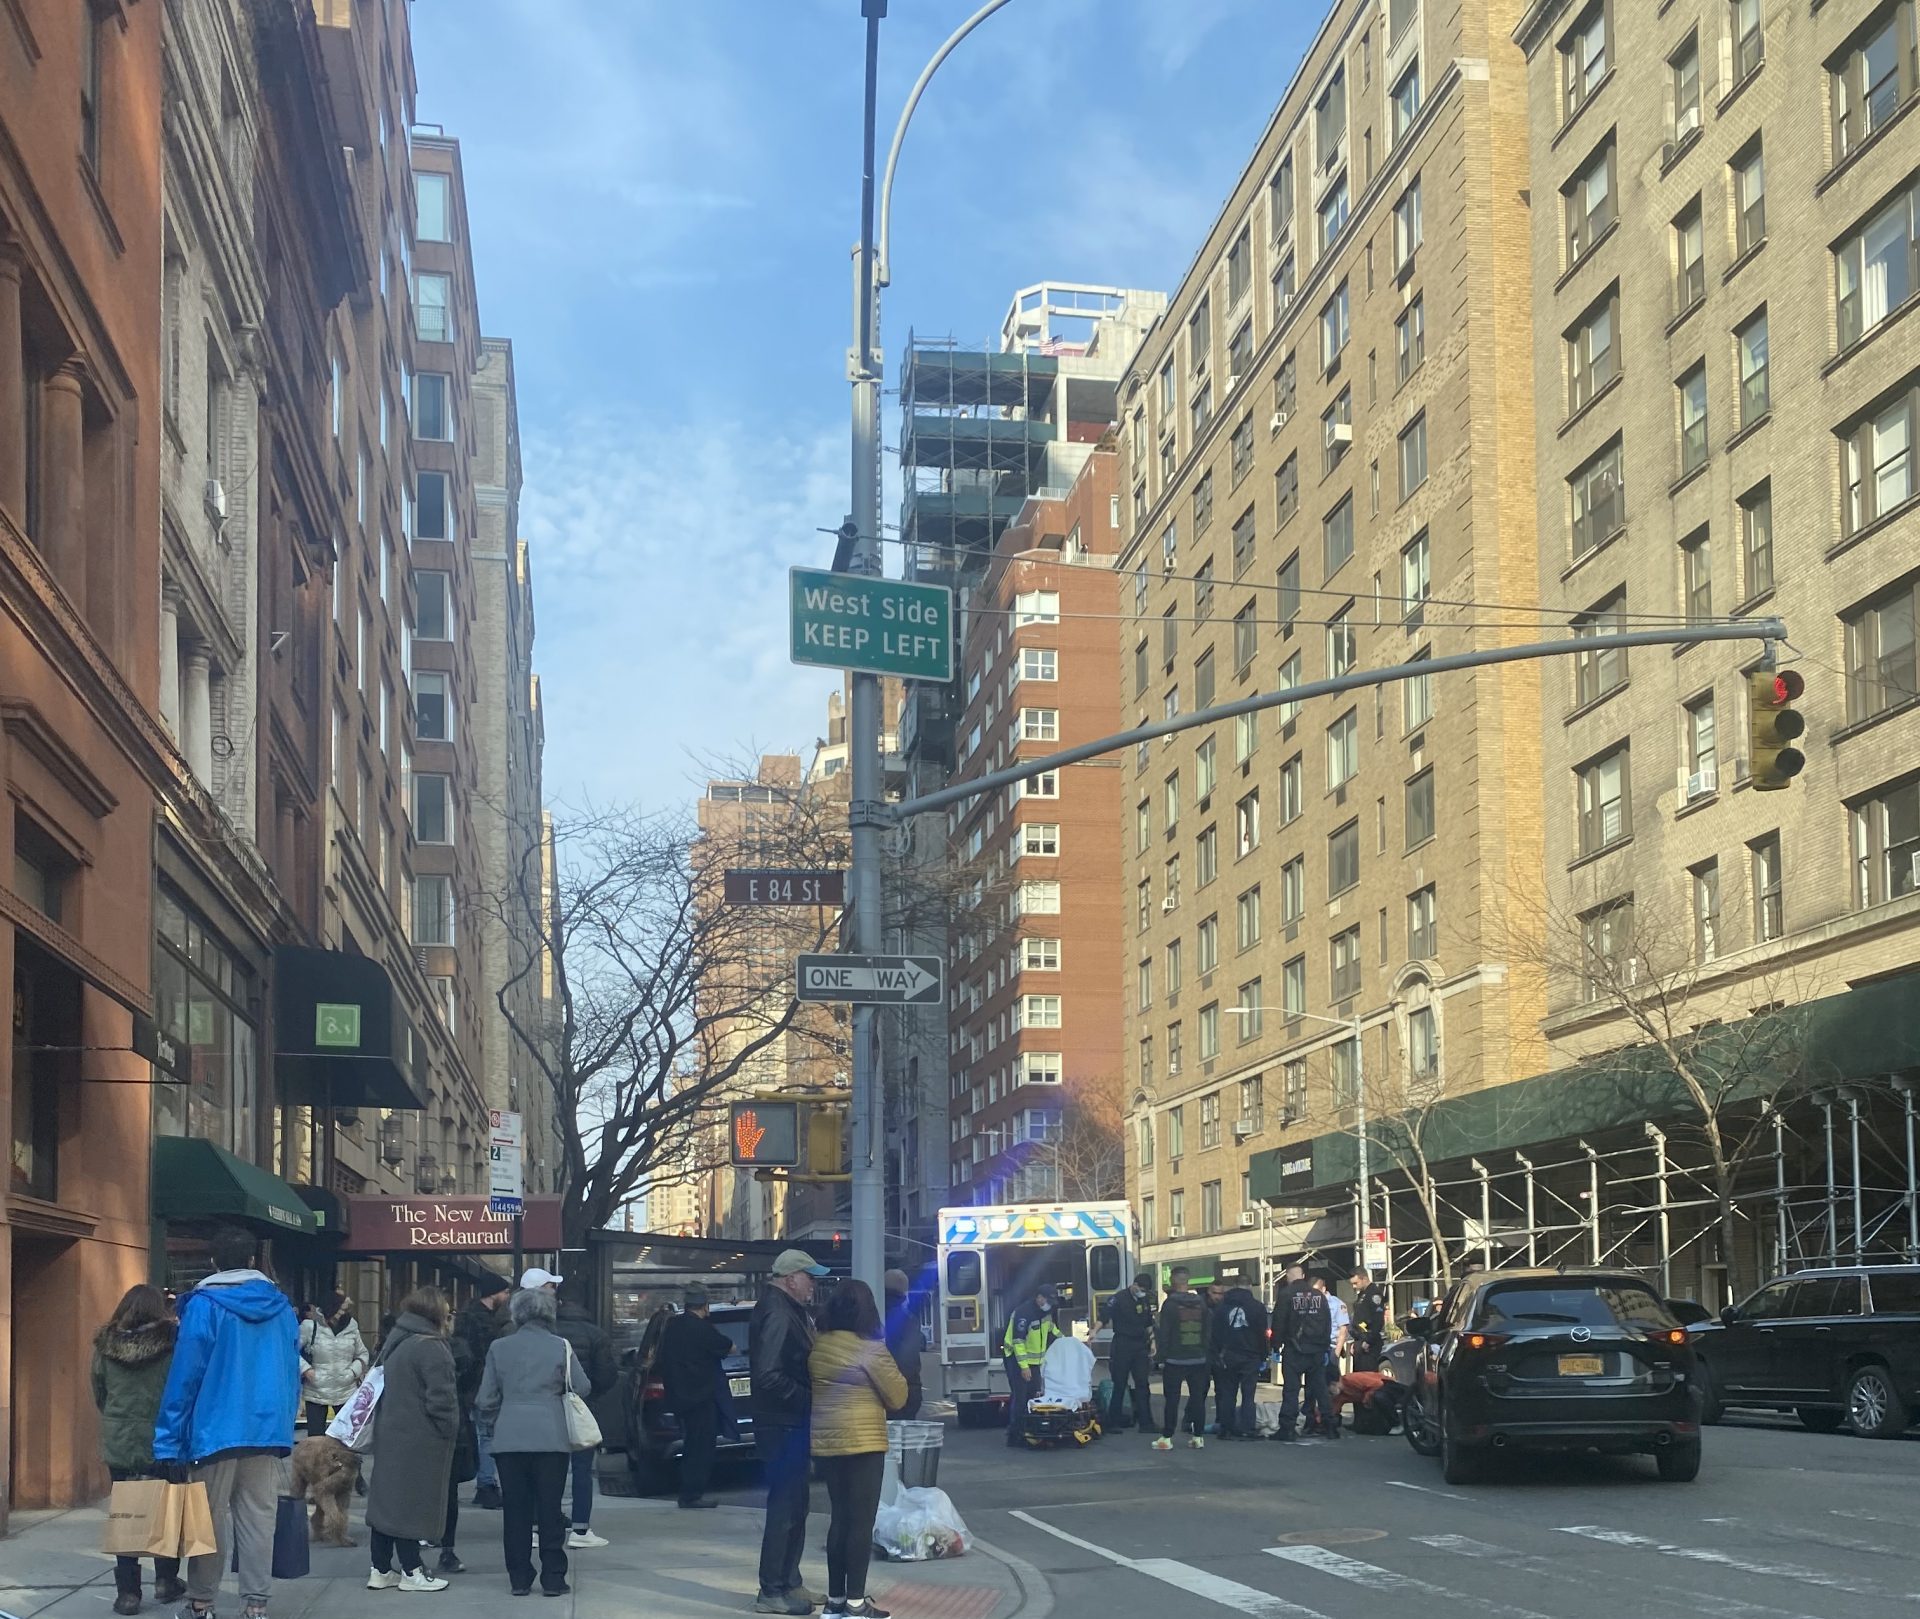 car accident scene in Manhattan